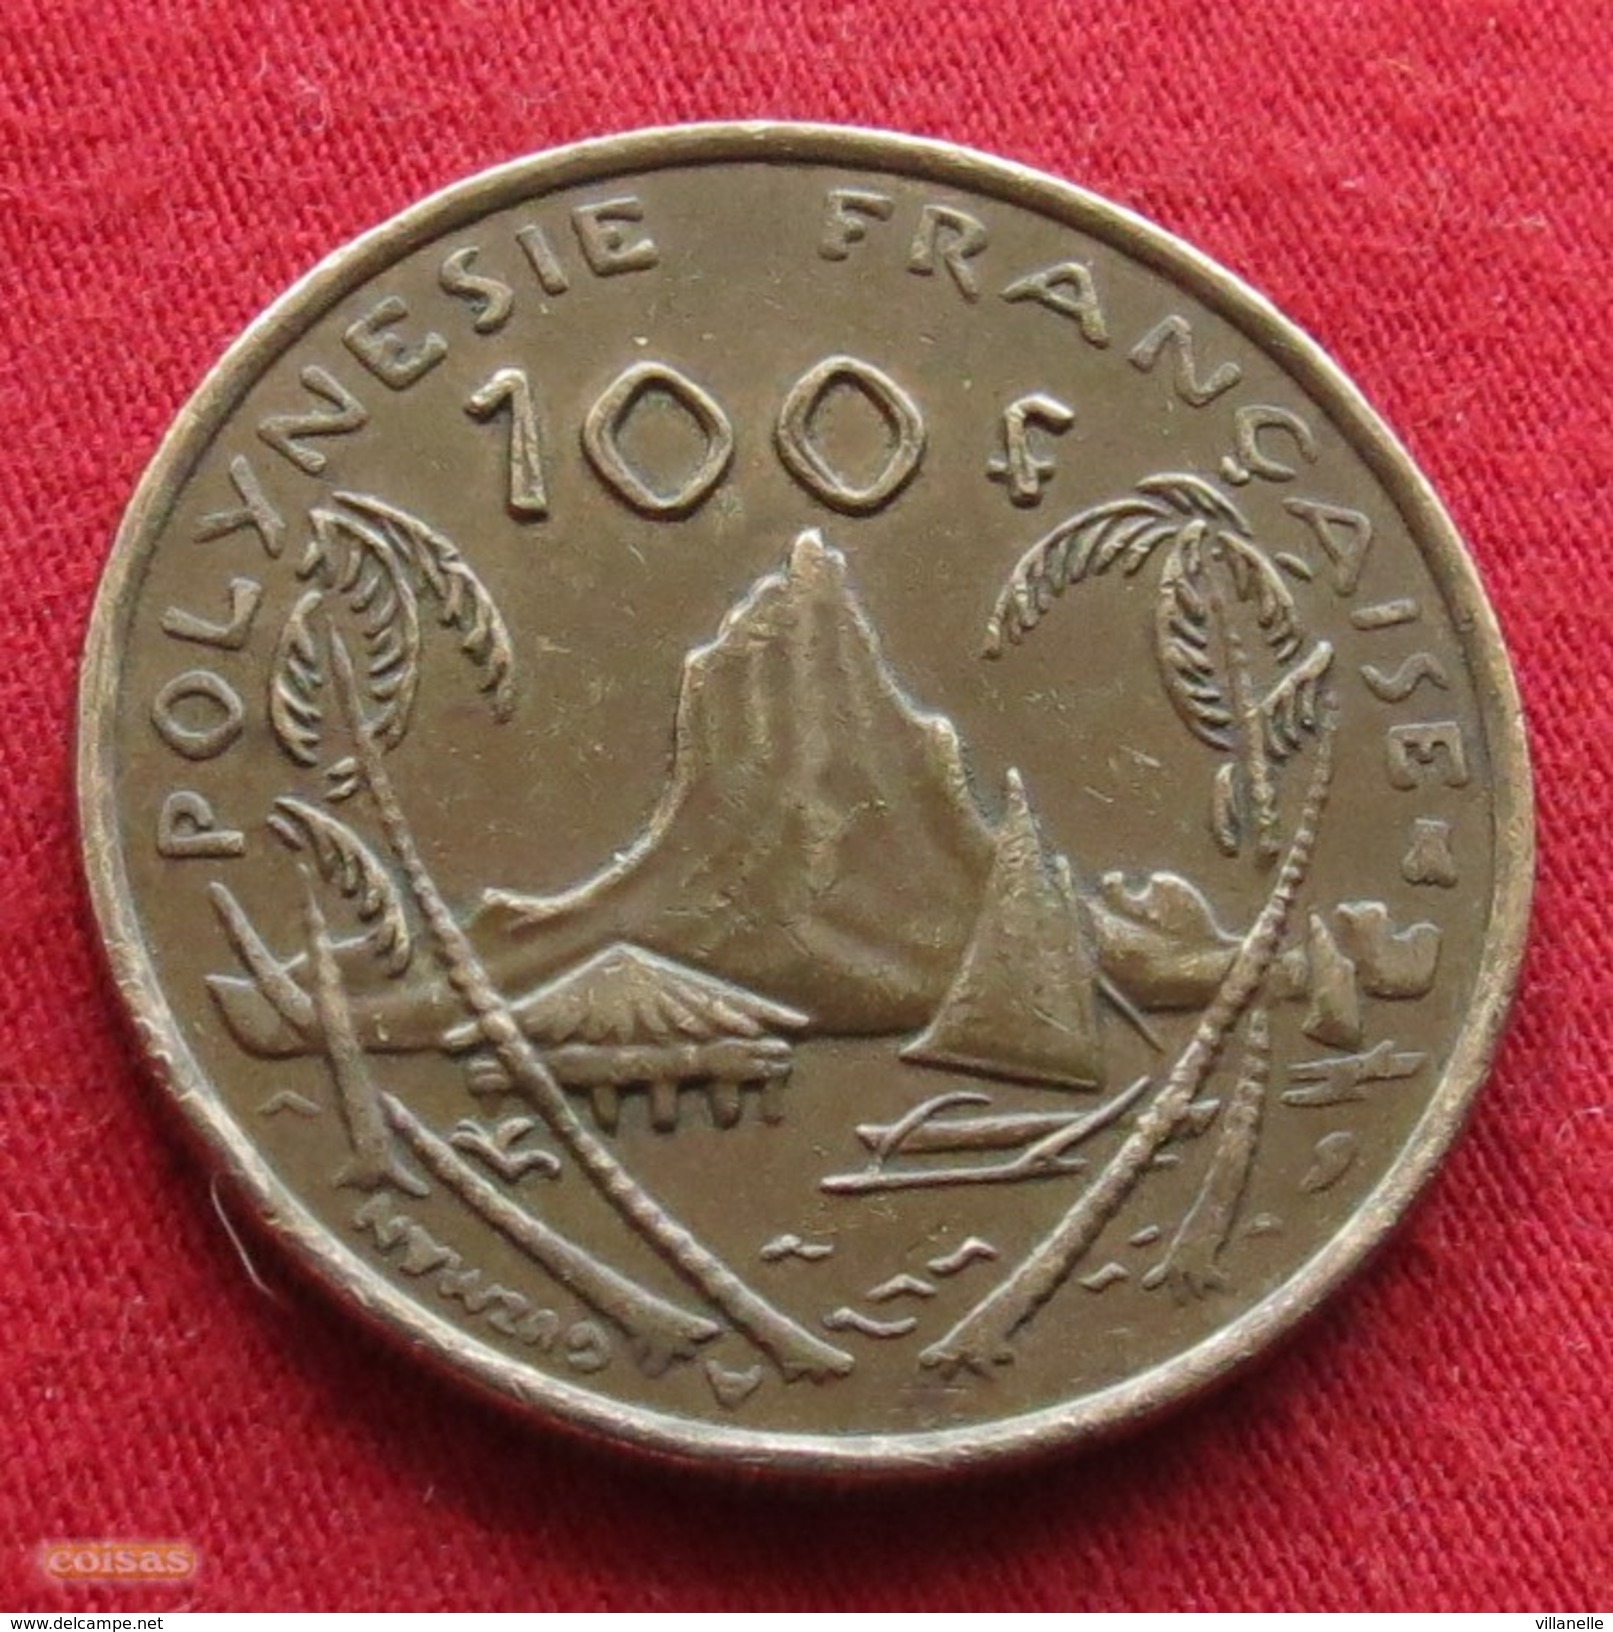 French Polynesia 100 Francs 1998 KM# 14 Polynesie Polinesia - Polynésie Française